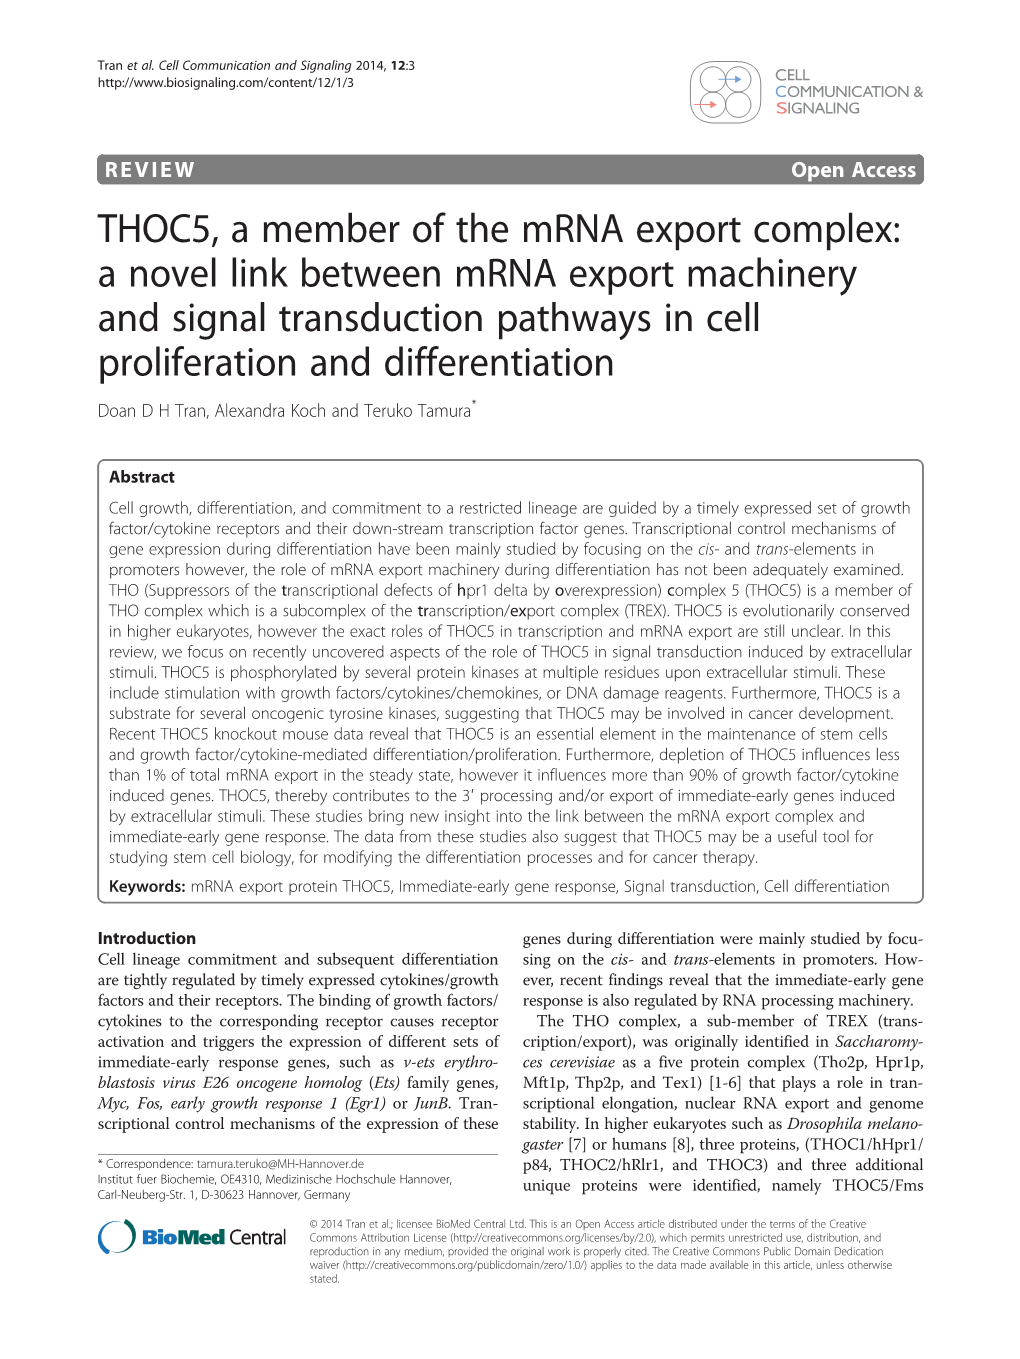 THOC5, a Member of the Mrna Export Complex: a Novel Link